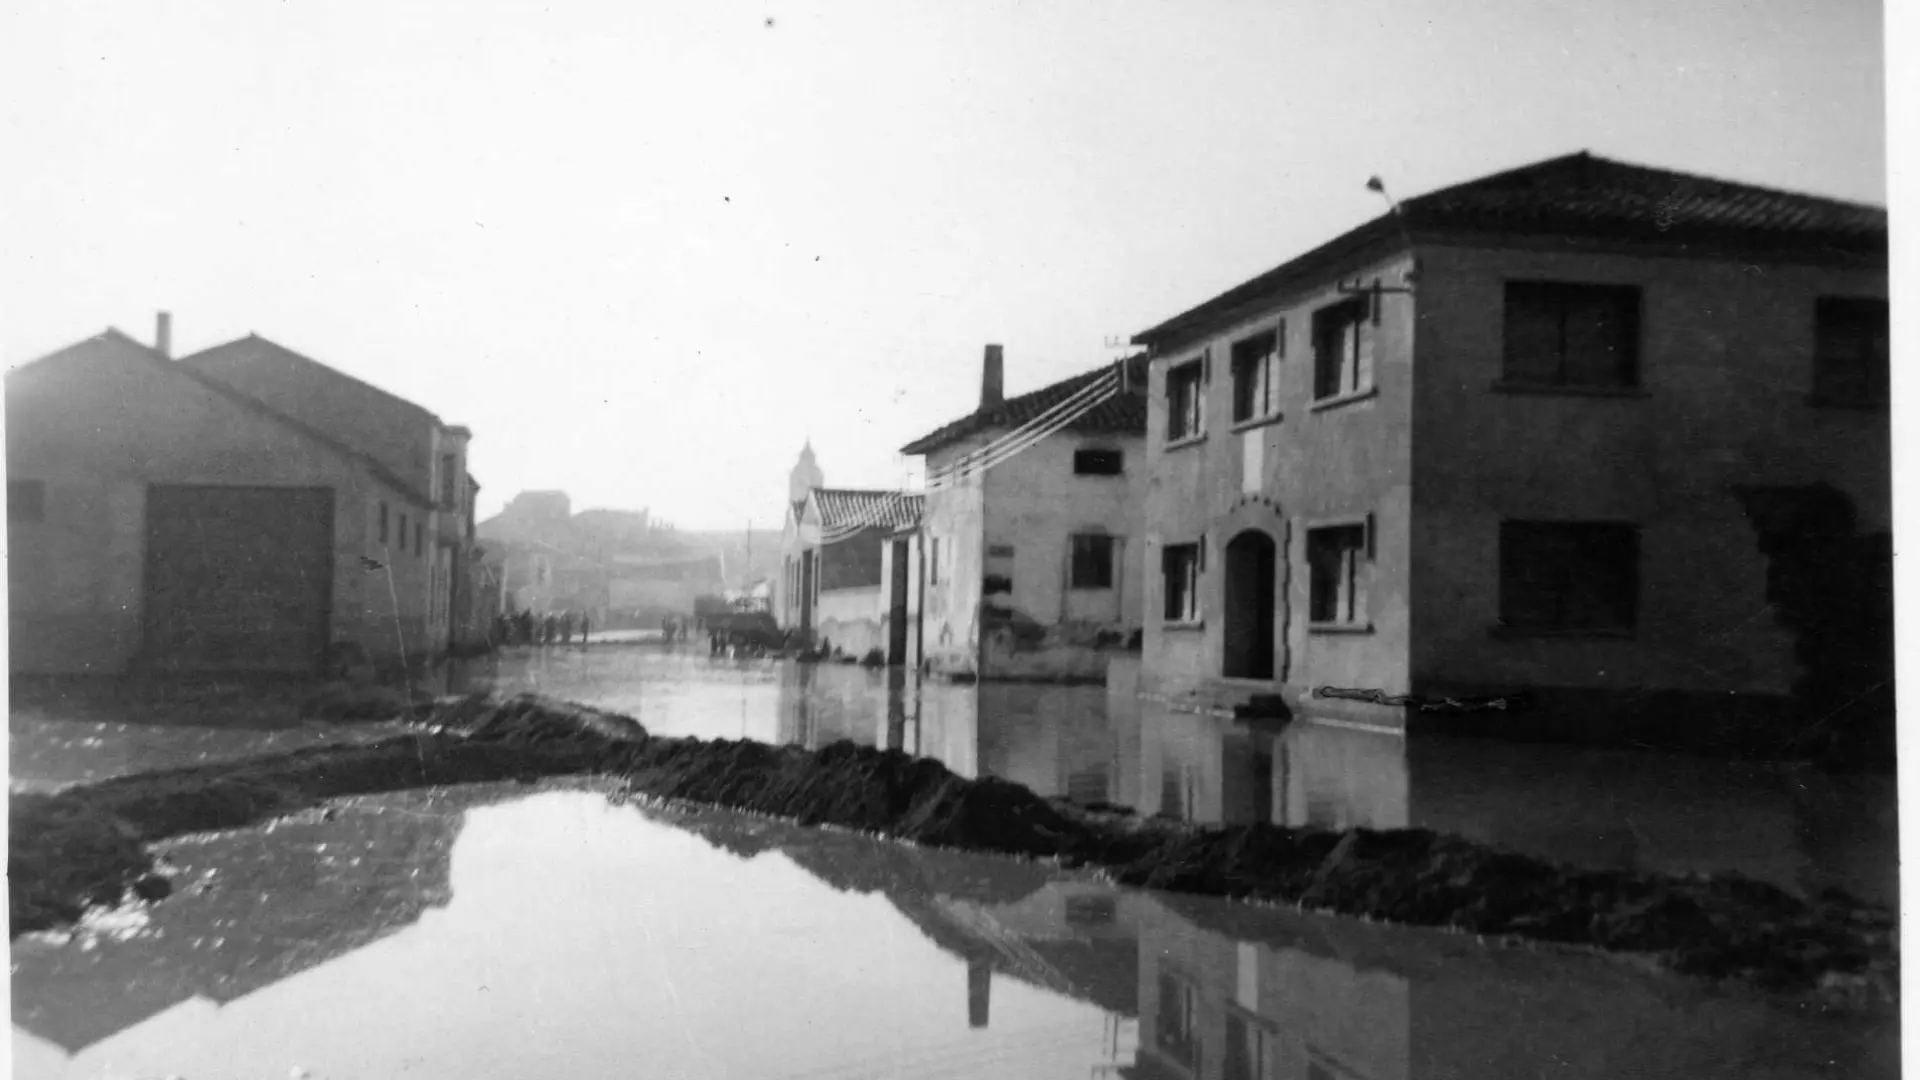 Una plaza de Pina de Ebro, durante la riada de 1961.